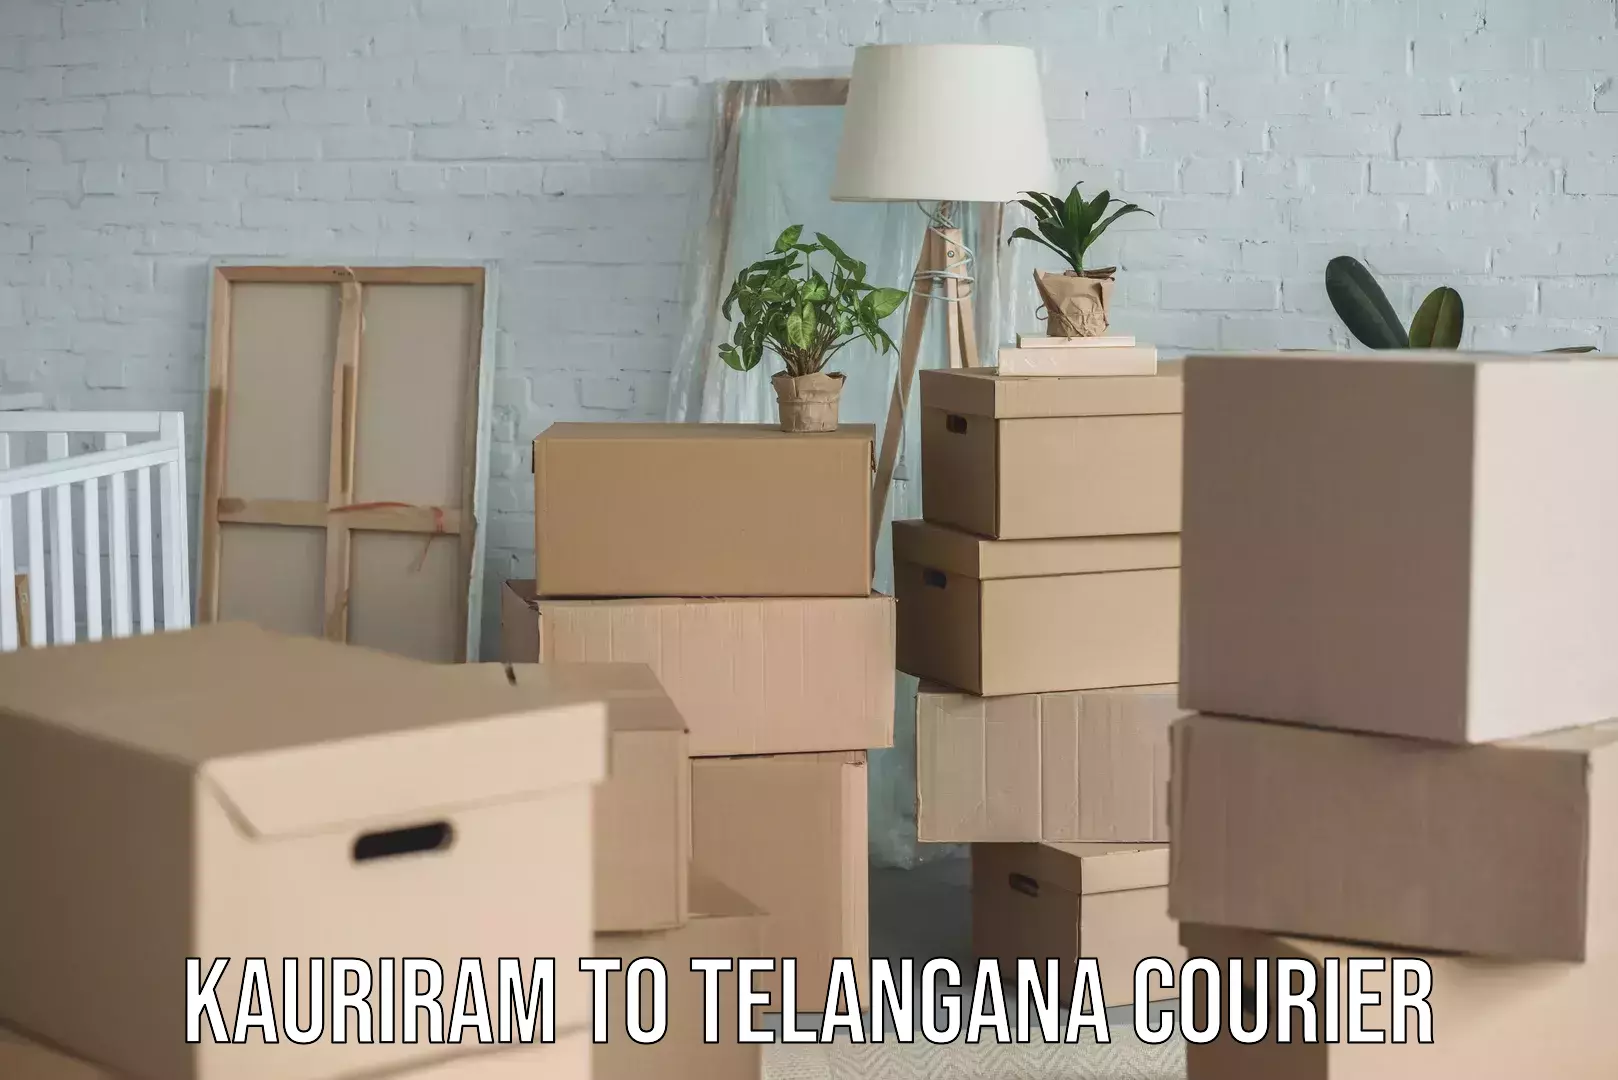 Household goods transport service Kauriram to Telangana